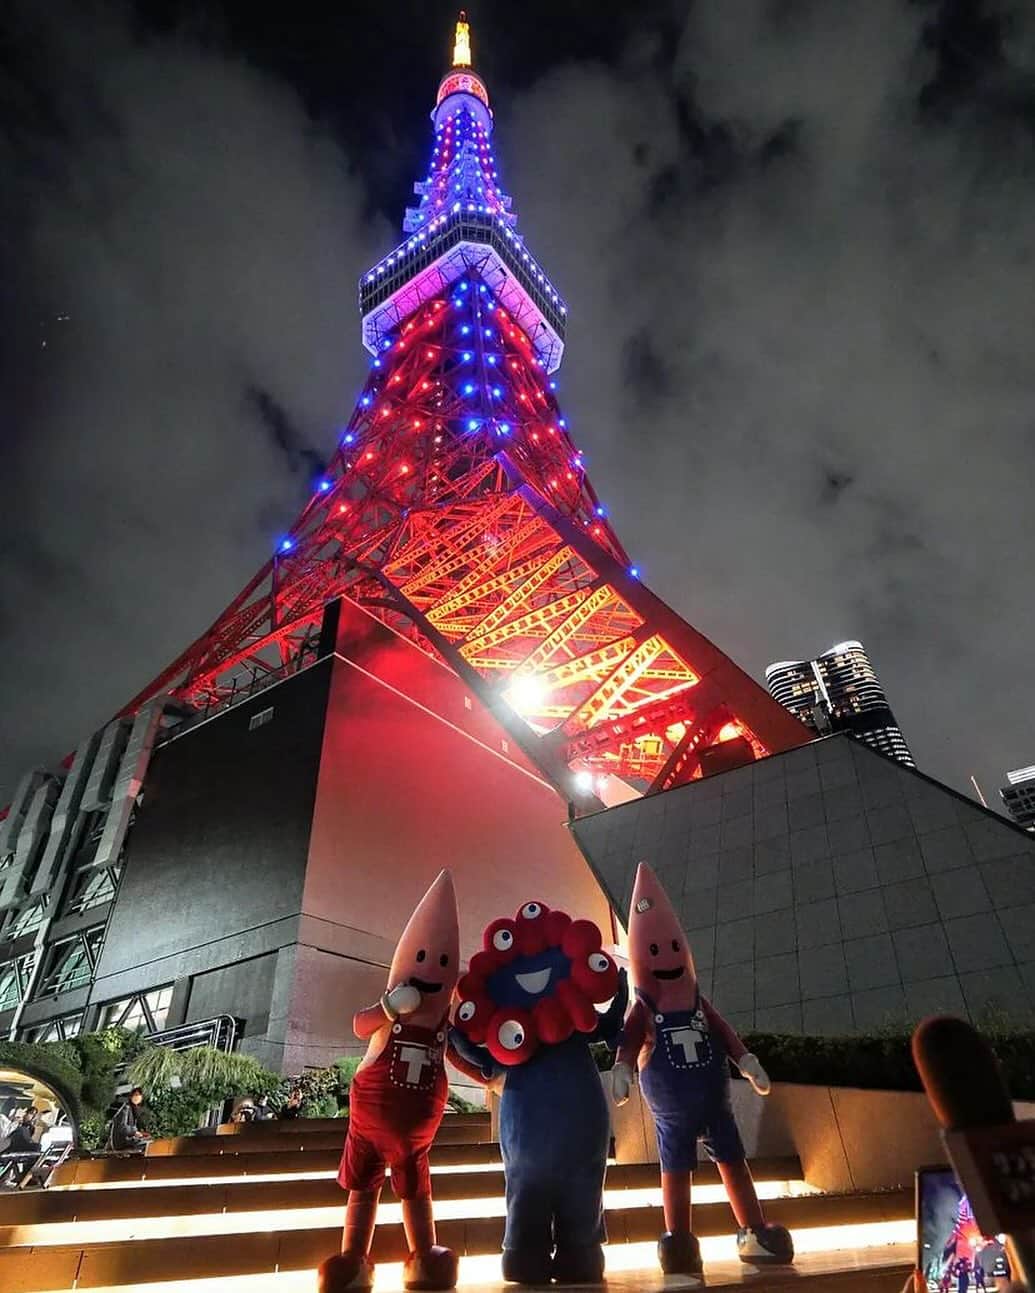 東京タワーのインスタグラム：「. 昨日（11/30）は、 大阪・関西万博開幕500日前でしたね。  東京タワーは、万博カラーであり、 公式キャラクター『ミャクミャク』のカラーでもある 赤と青の特別カラーでライトアップしました✨   『ミャクミャク』も東京タワーに駆けつけてくれて ノッポン兄弟（ノッポン兄弟も赤と青！）と一緒に ライトアップを楽しみました♪   本日はYour Tokyo Tower🗼から @orangebarm さんのお写真をご紹介！   東京タワースペシャルライトアップと共に 貴重なスリーショット！！！   素敵なお写真をありがとうございました😊  ––––––––––––––––––––––––––––  【ミャクミャクの愛称コンセプトのご紹介！】   今まで「脈々」と受け継がれてきた 私たち人間のDNA、知恵と技術、歴史や文化。  変幻自在なキャラクターは 更にあらゆる可能性をその身に宿して、 私たち人間の素晴らしさを これからも「脈々」と未来に 受け継いでいってくれるはず。  そんな希望を込めて 「脈々＝ミャクミャク」と名付けられました。  またミャク＝脈であり、生命そのもの。  ミャクミャクという2音が続く様は、 命が続いている音にも聞こえます。  ––––––––––––––––––––––––––––  #東京タワー #東京タワー🗼  #tokyotower #tokyotower🗼  #万博 #ミャクミャク」